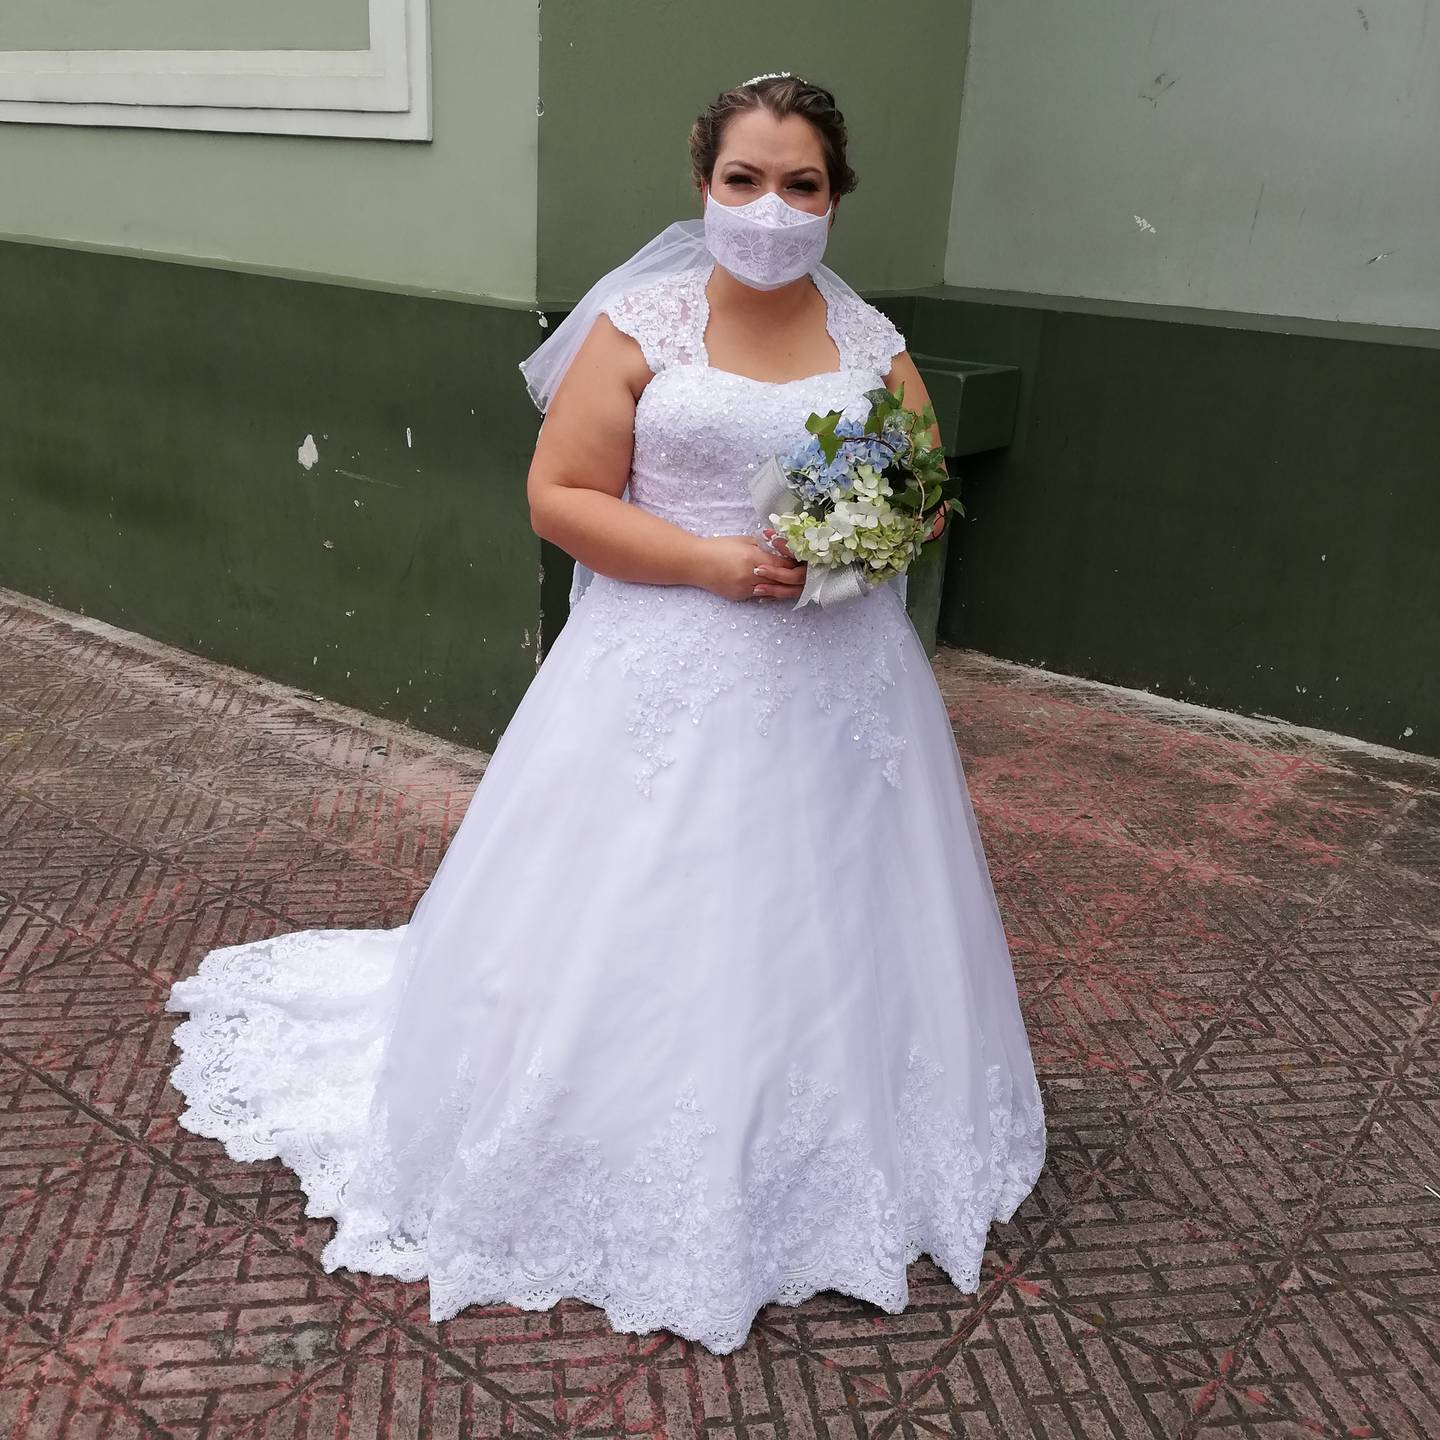 A las once de la mañana de este sábado 20 de marzo, Jendry Quesada Ulloa, se casó con José Andrés Obando Díaz, después de haber pospuesto la celebración en dos ocasiones anteriores por culpa del covid-19.